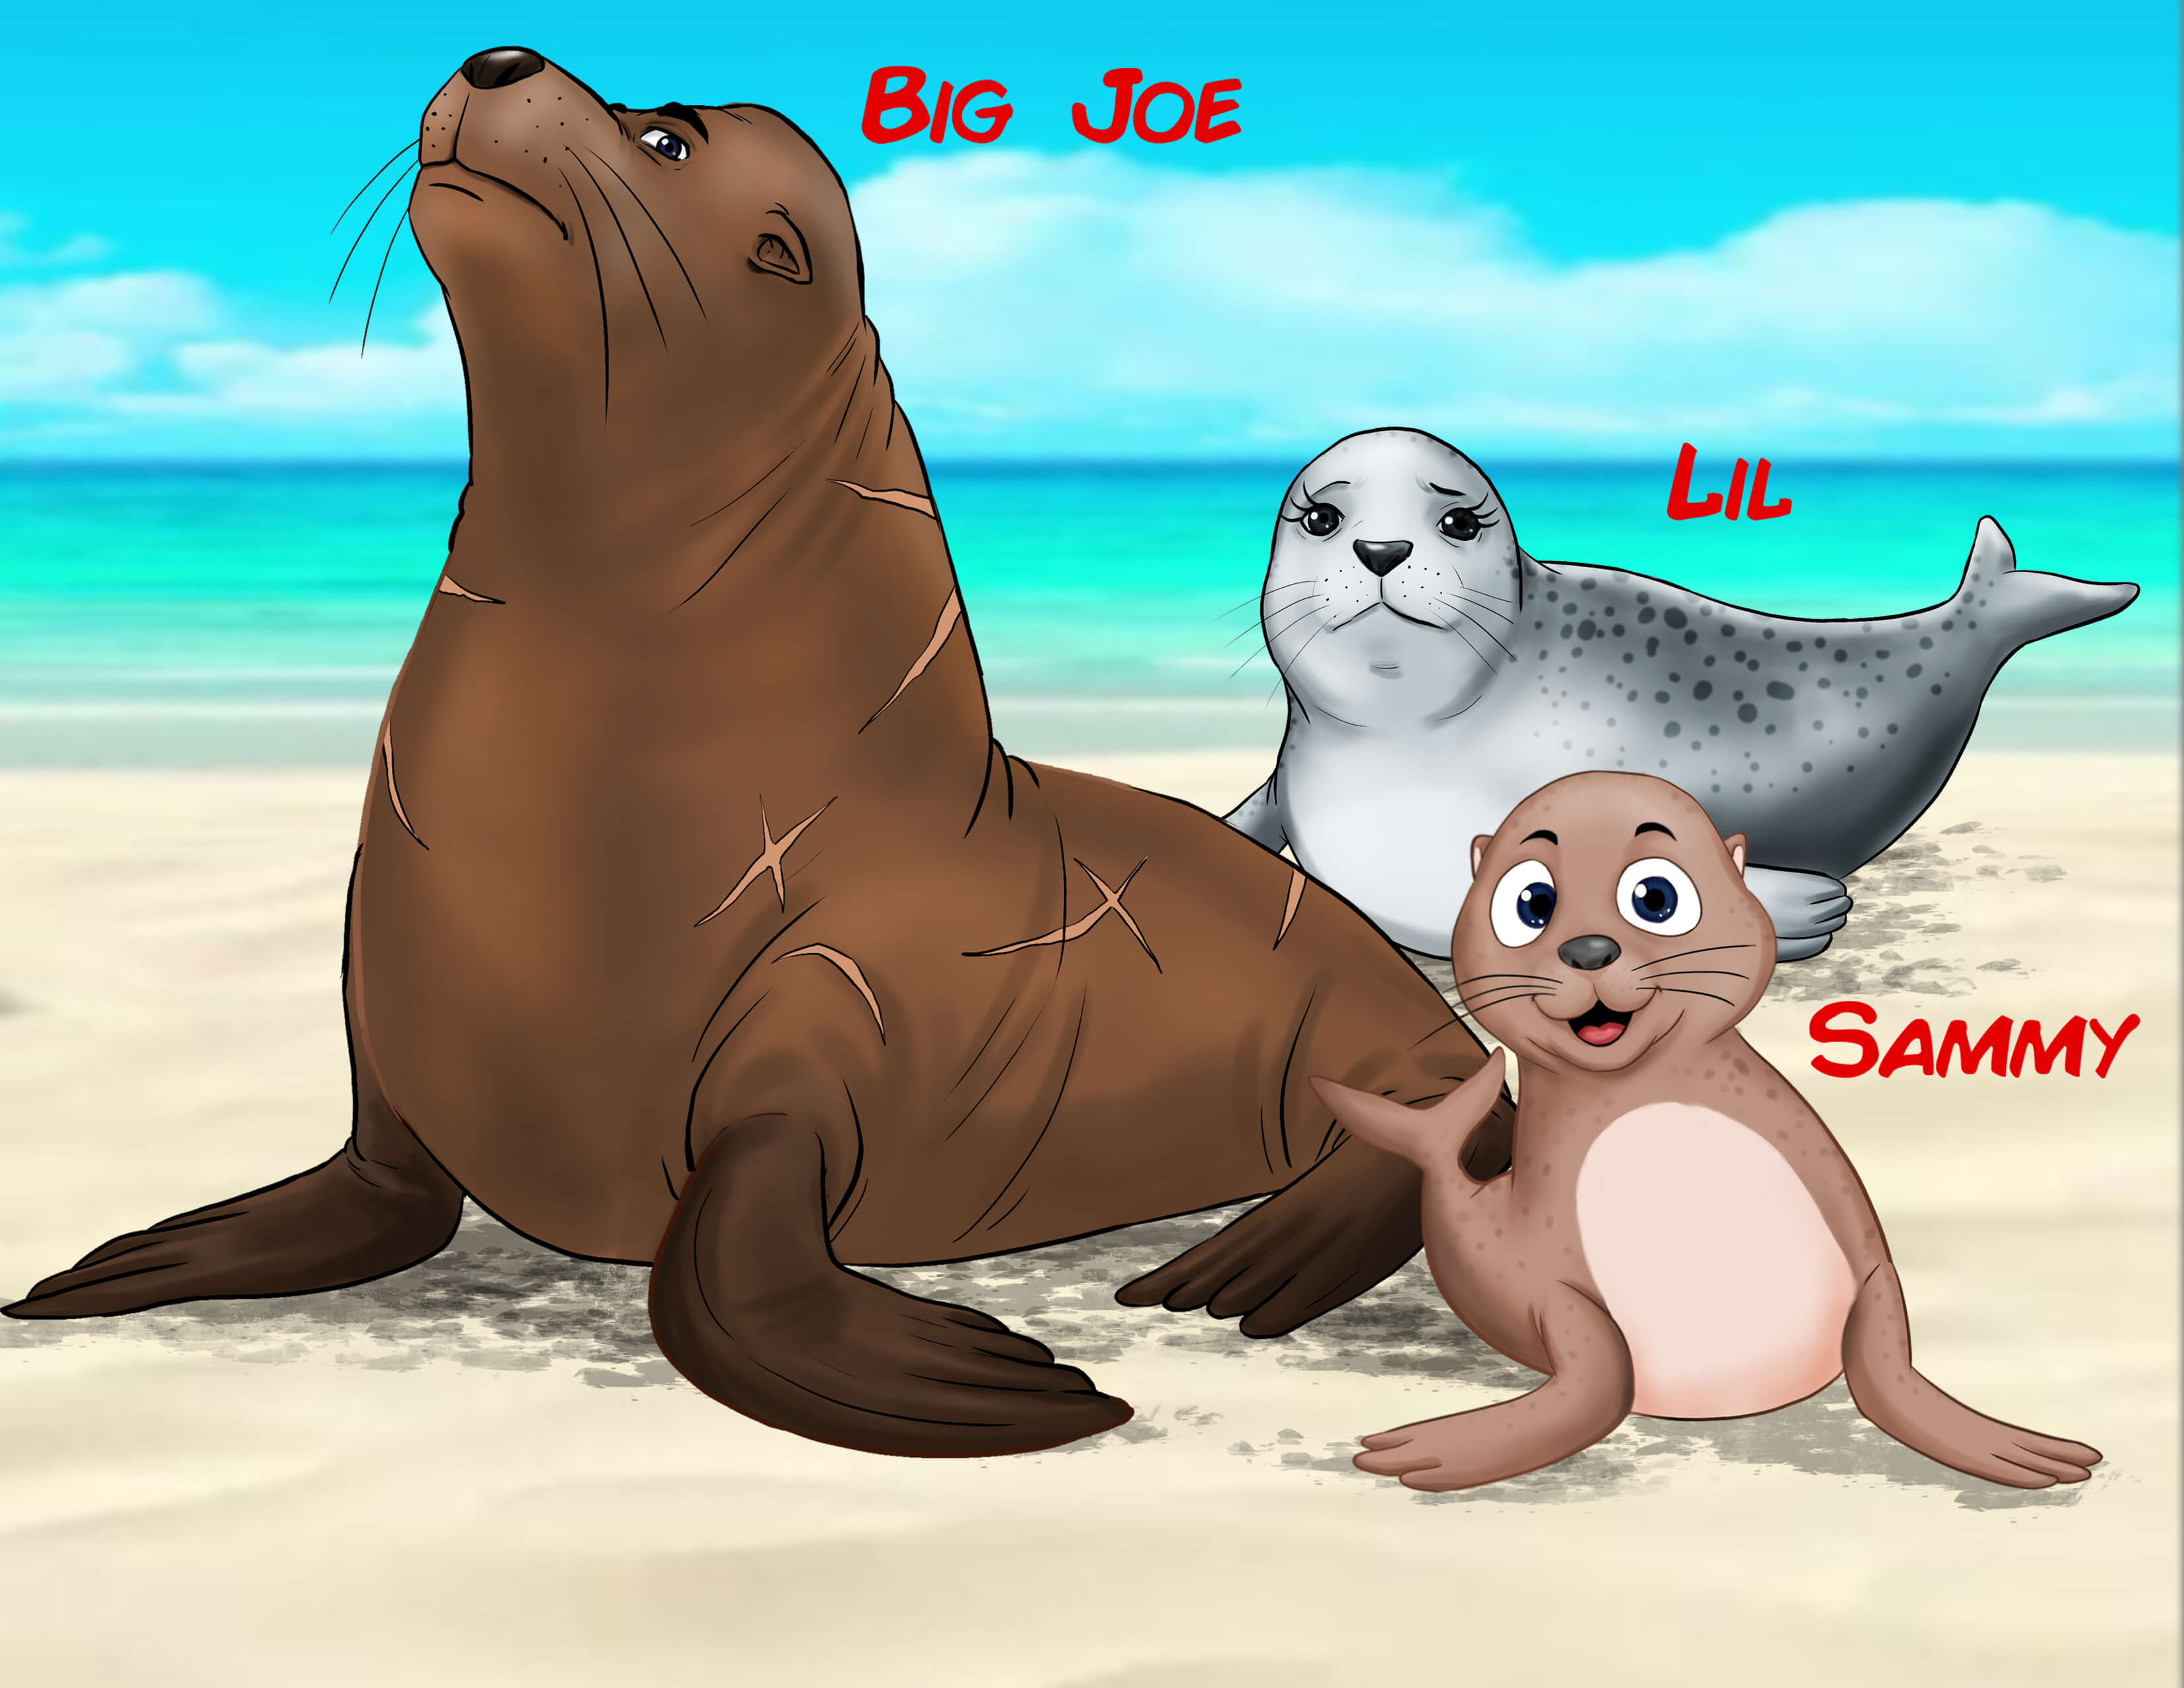 Big Joe, Lil, and Sammy